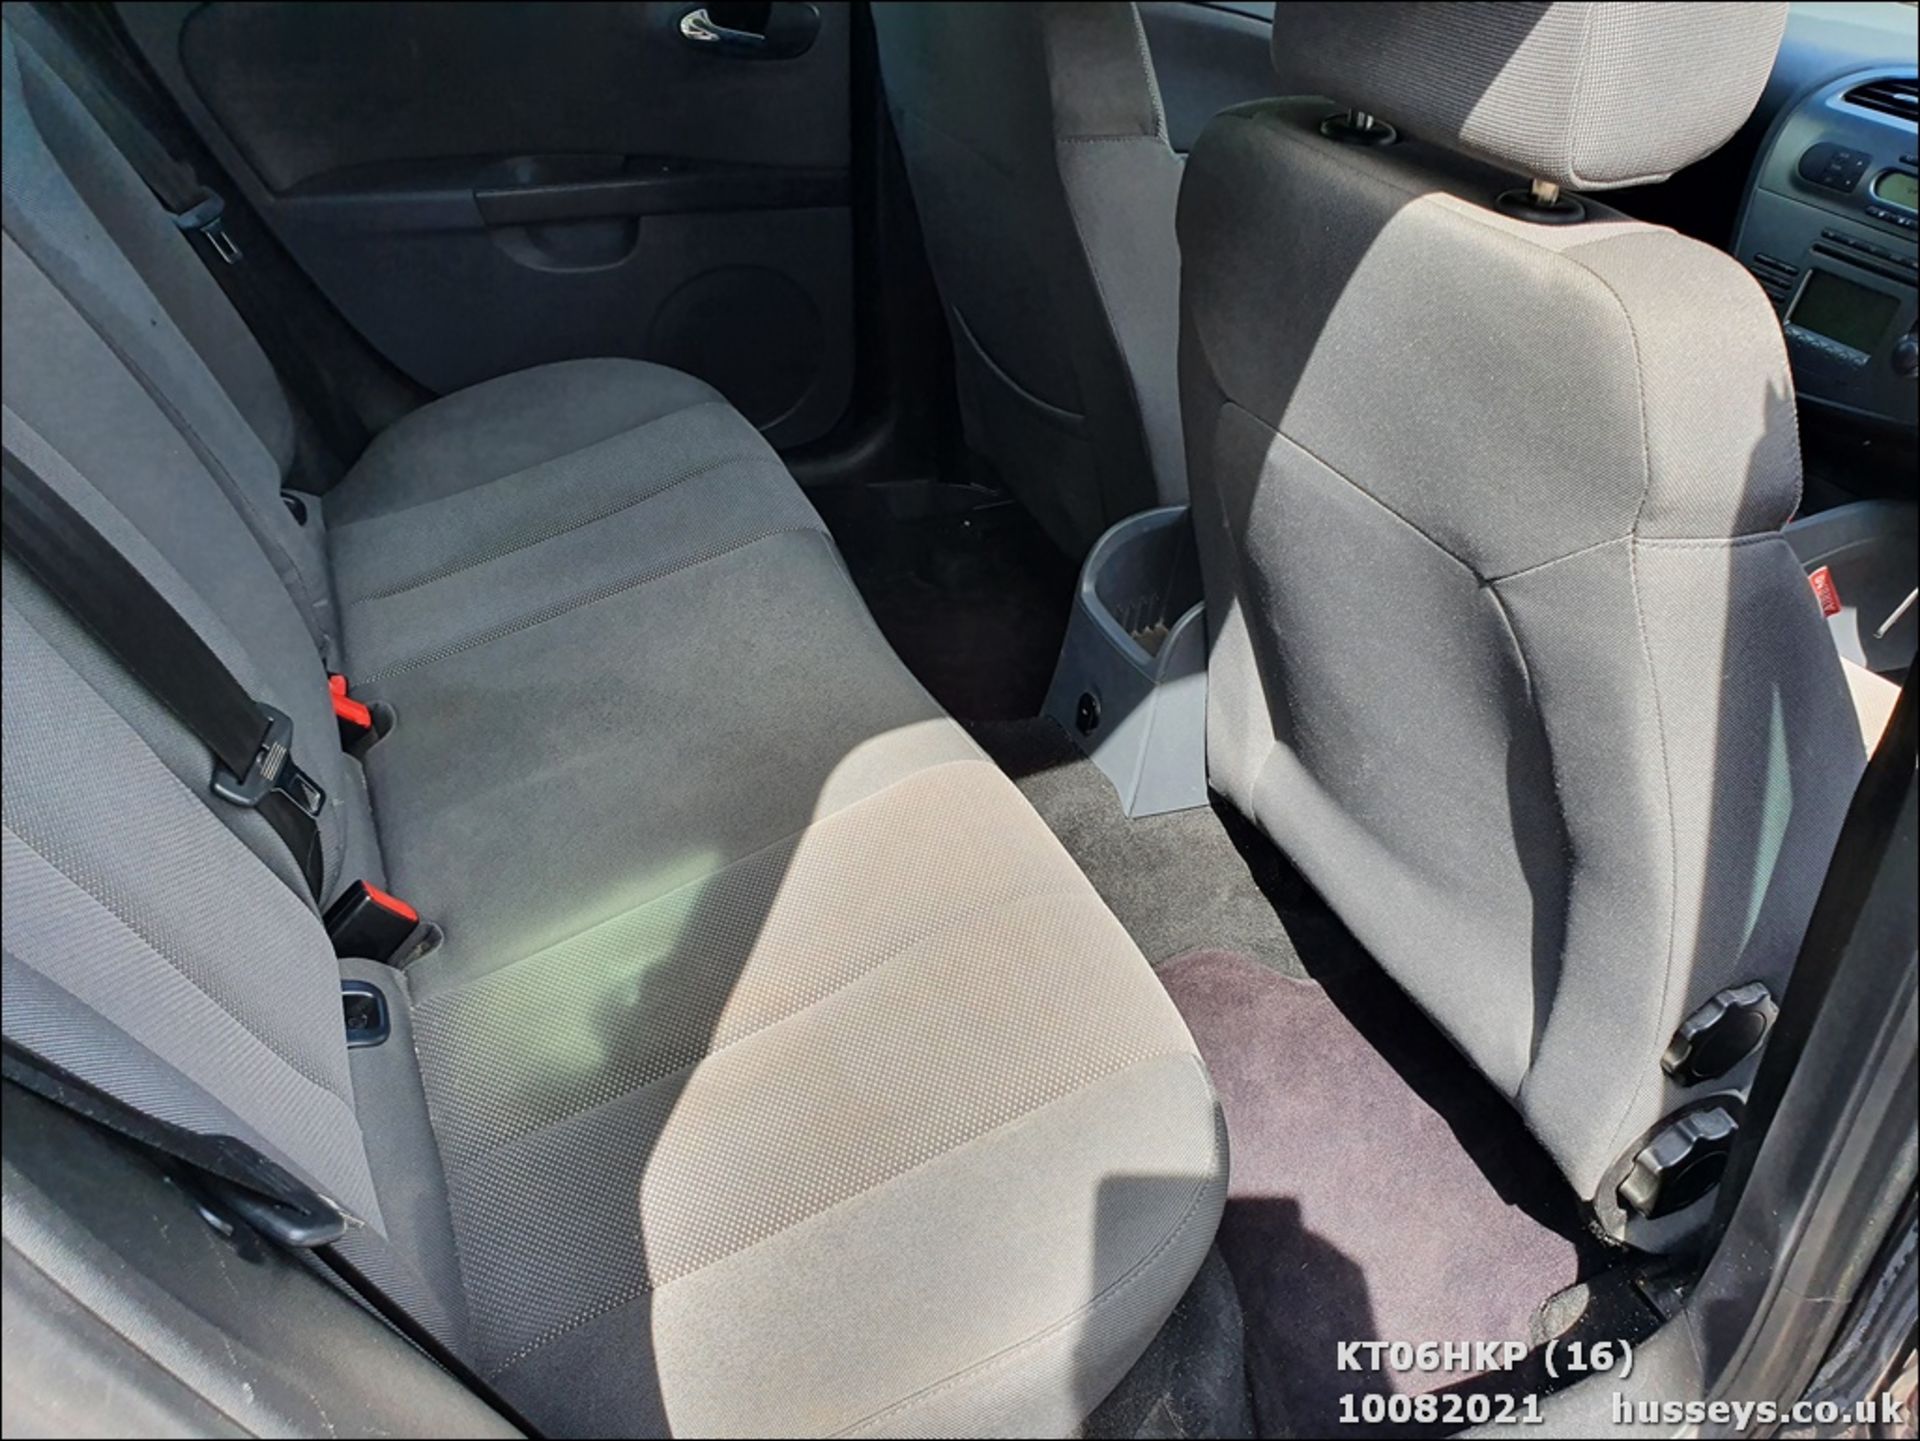 06/06 SEAT LEON STYLANCE - 1595cc 5dr Hatchback (Black, 142k) - Image 16 of 18